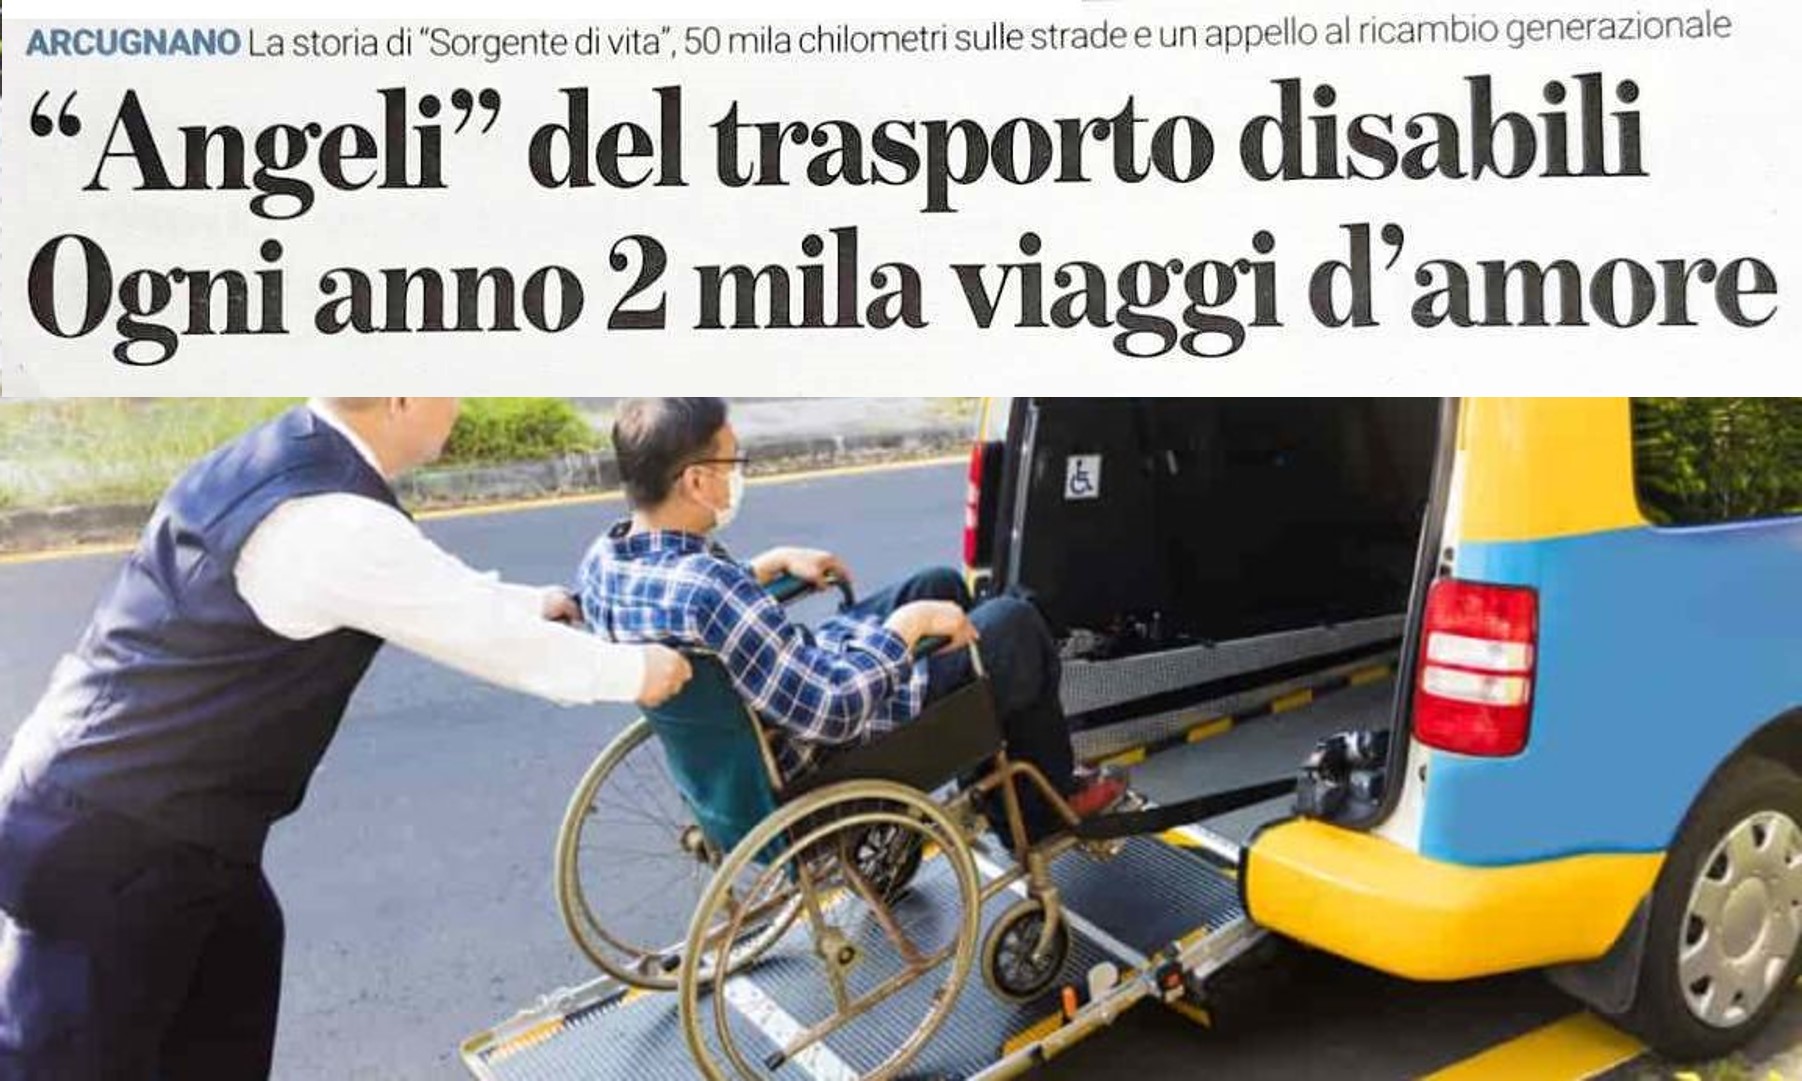 Angeli del trasporto disabili